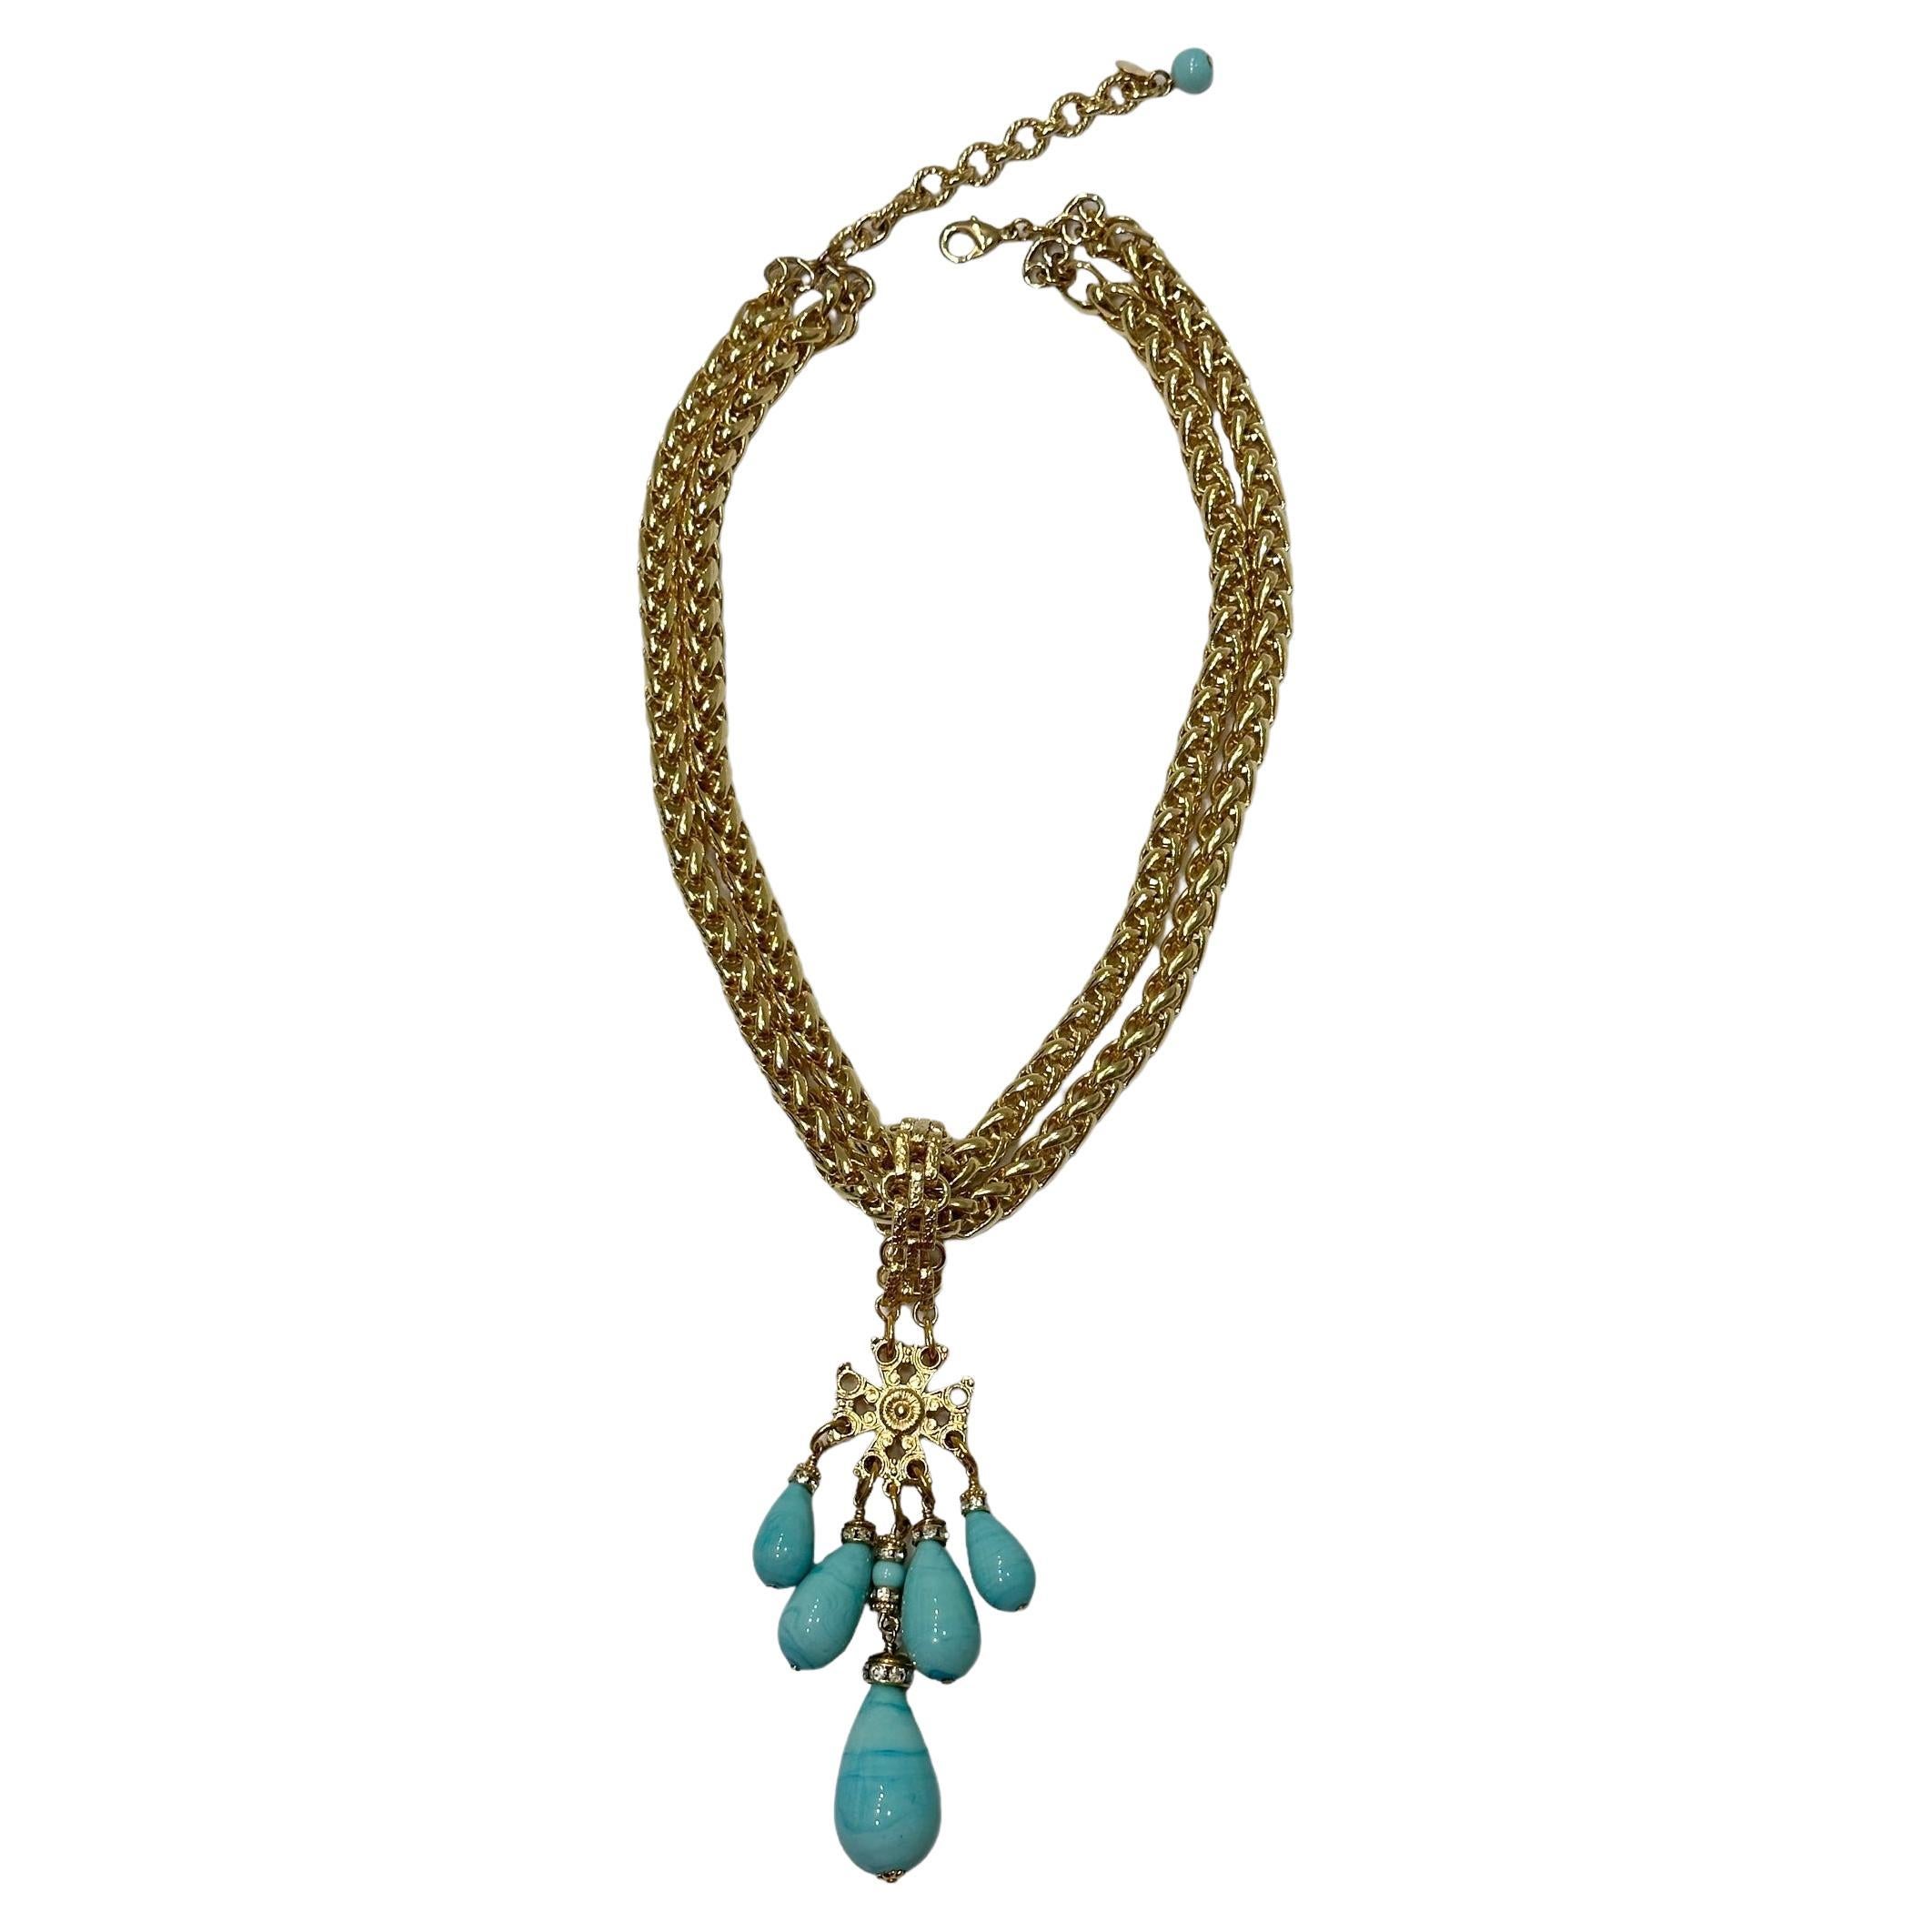 Francoise Montague Chain Necklaces